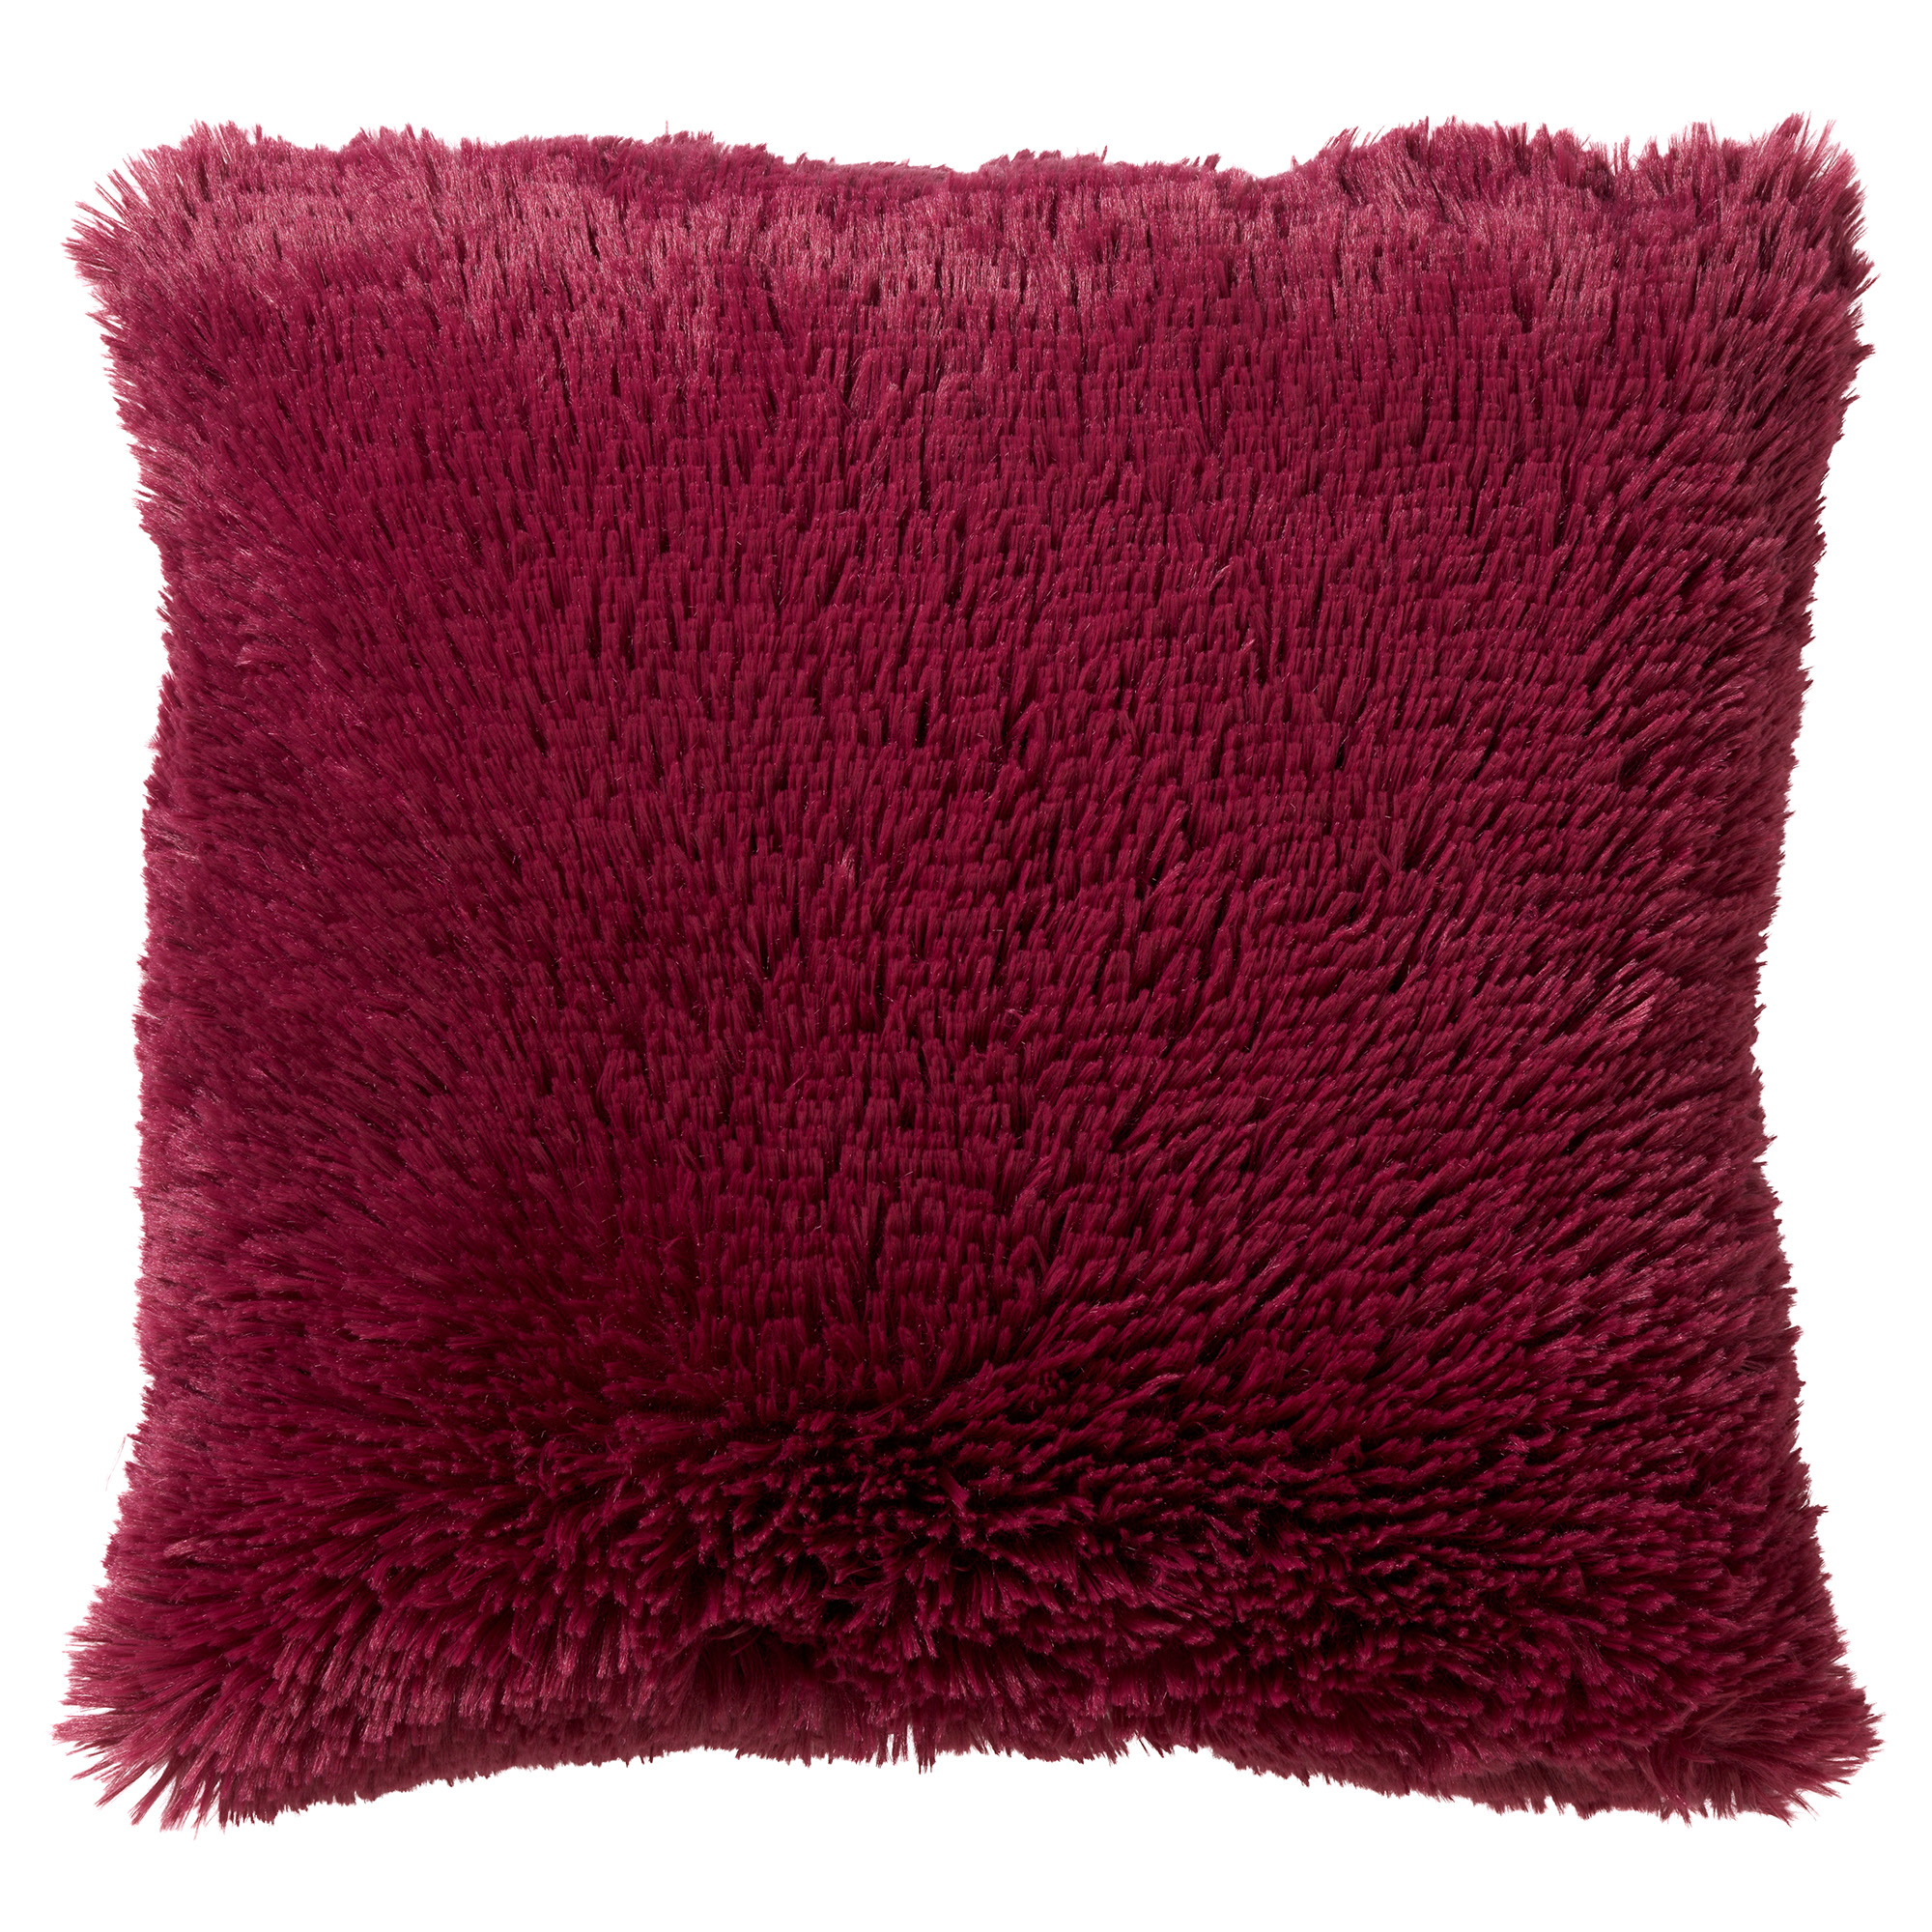 FLUFFY - Sierkussen 45x45 cm - superzacht - effen kleur - Red Plum - roze